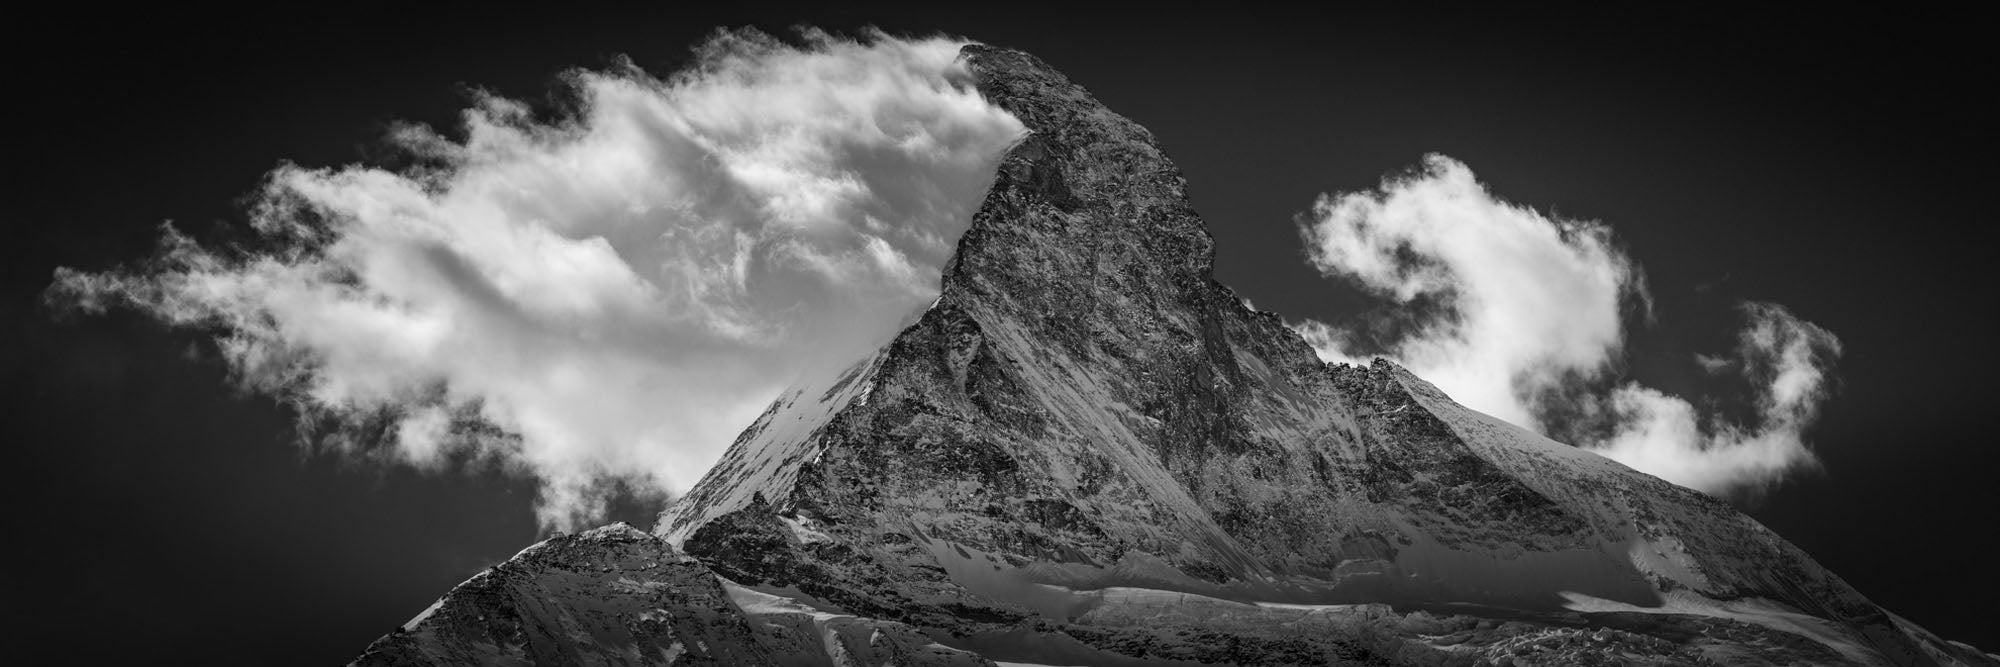 Cervin, Matterhorn, Switzerland - Petra Gut Contemporary AG Thomas Crauwels